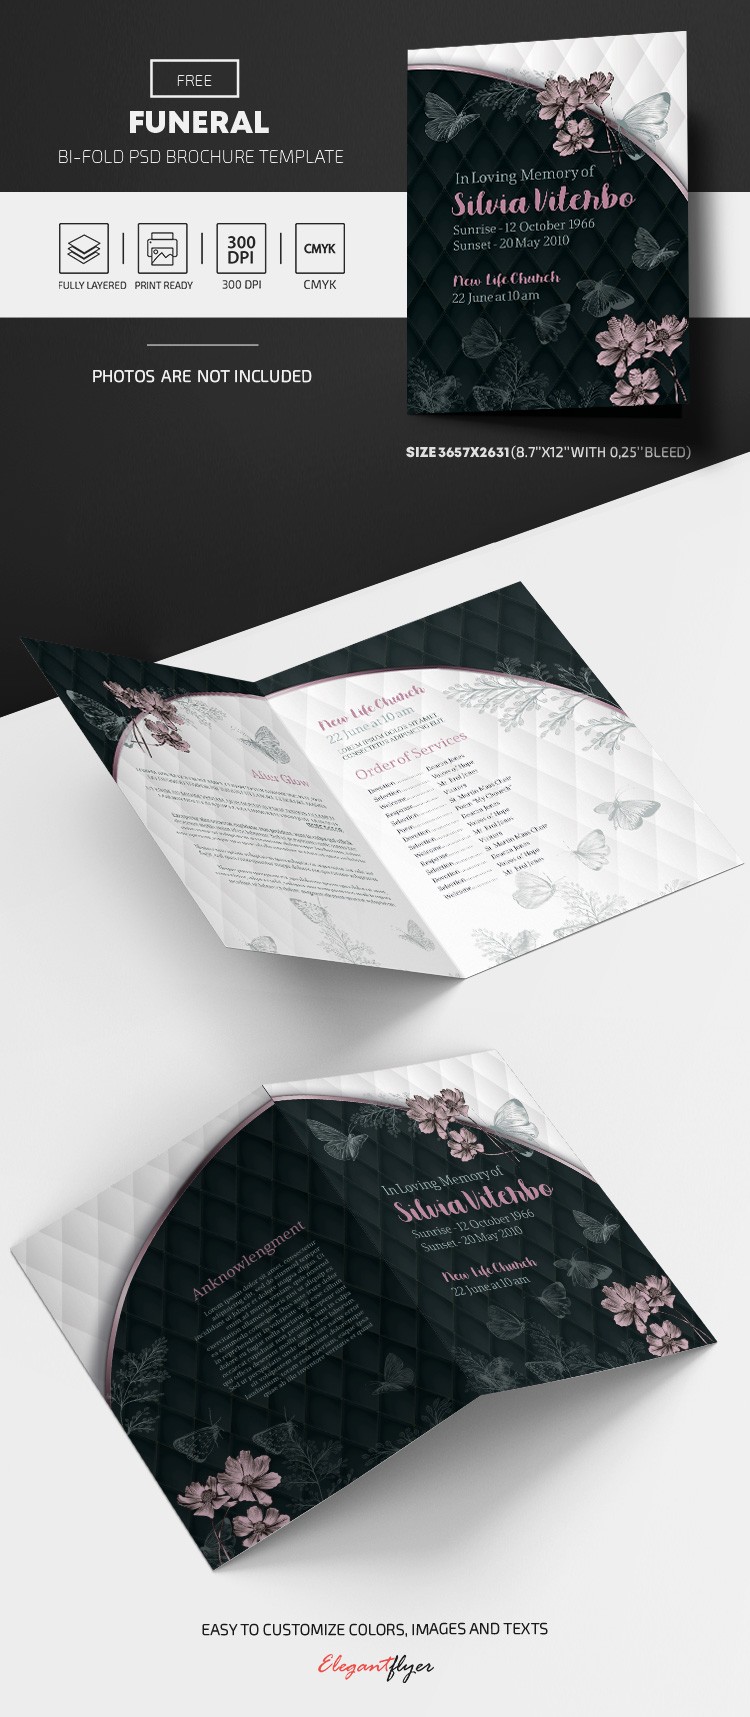 Modèle gratuit de brochure funéraire by ElegantFlyer